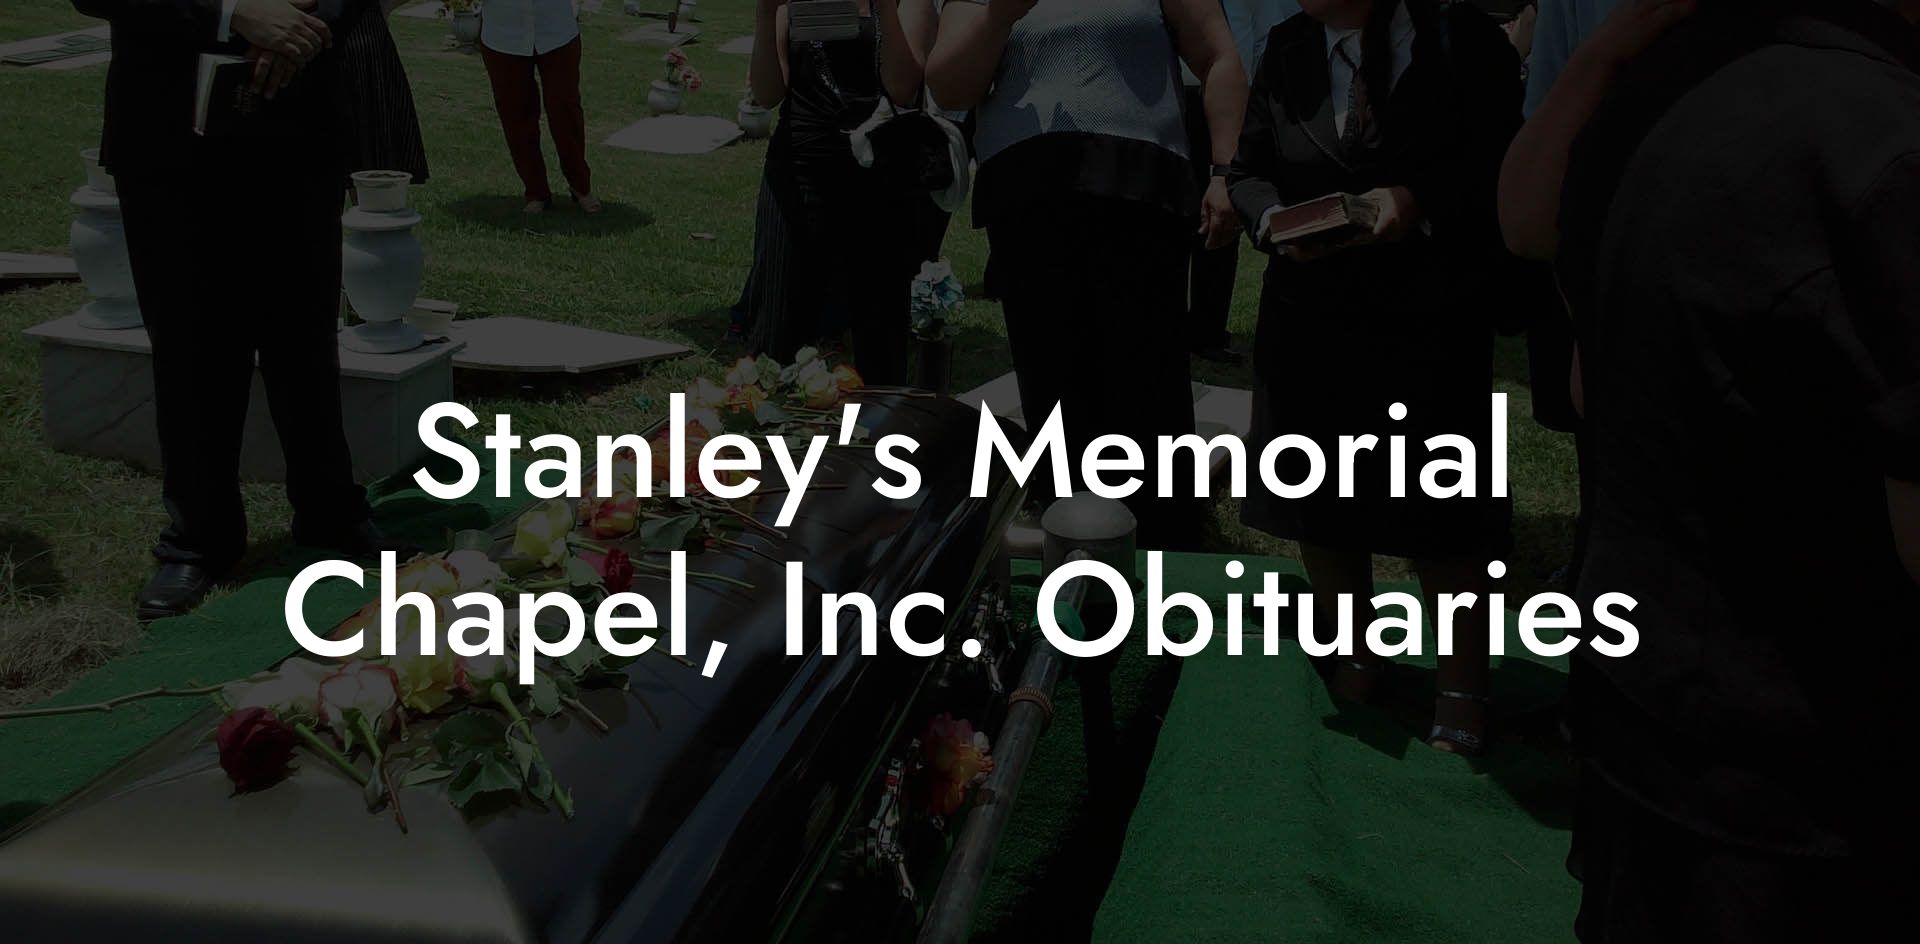 Stanley's Memorial Chapel, Inc. Obituaries